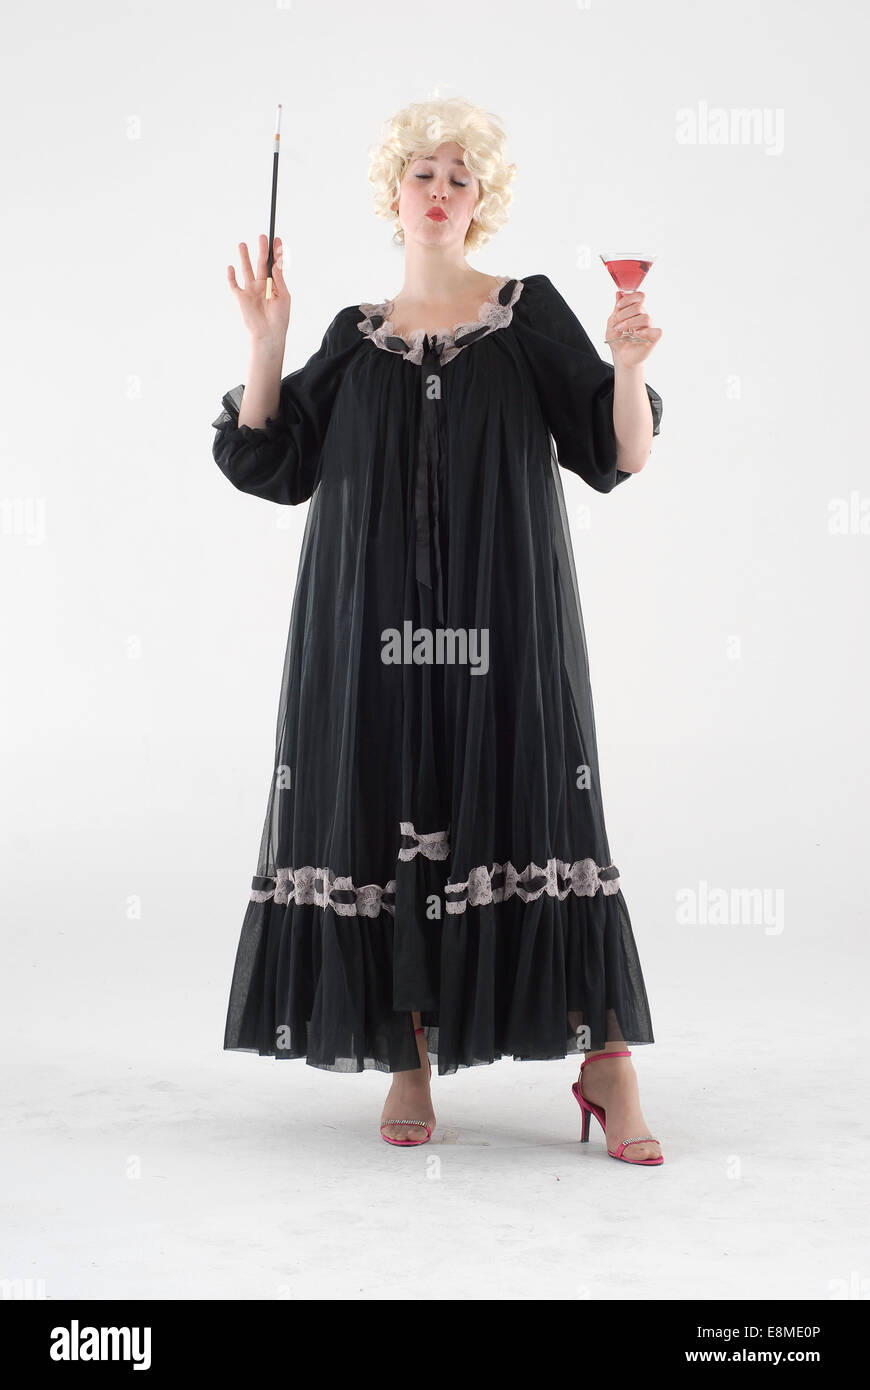 https://c8.alamy.com/compes/e8me0p/mujer-en-vestidos-de-traje-de-comedia-en-1960-moda-ropa-divertida-y-loca-e8me0p.jpg